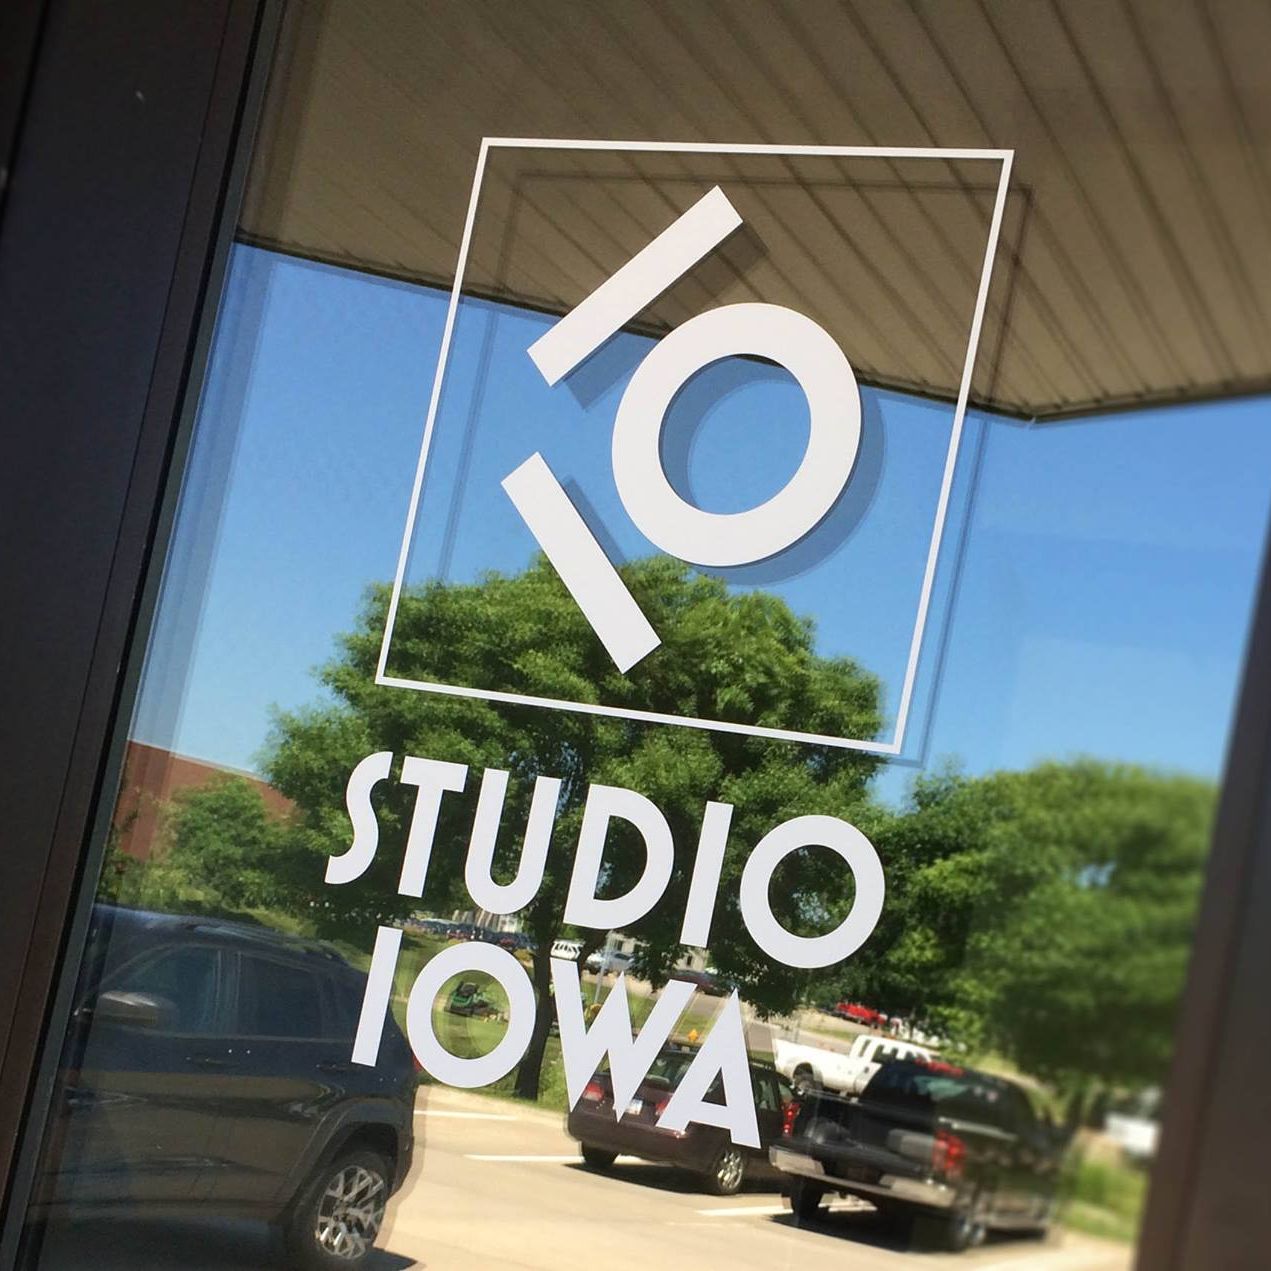 Studio Iowa